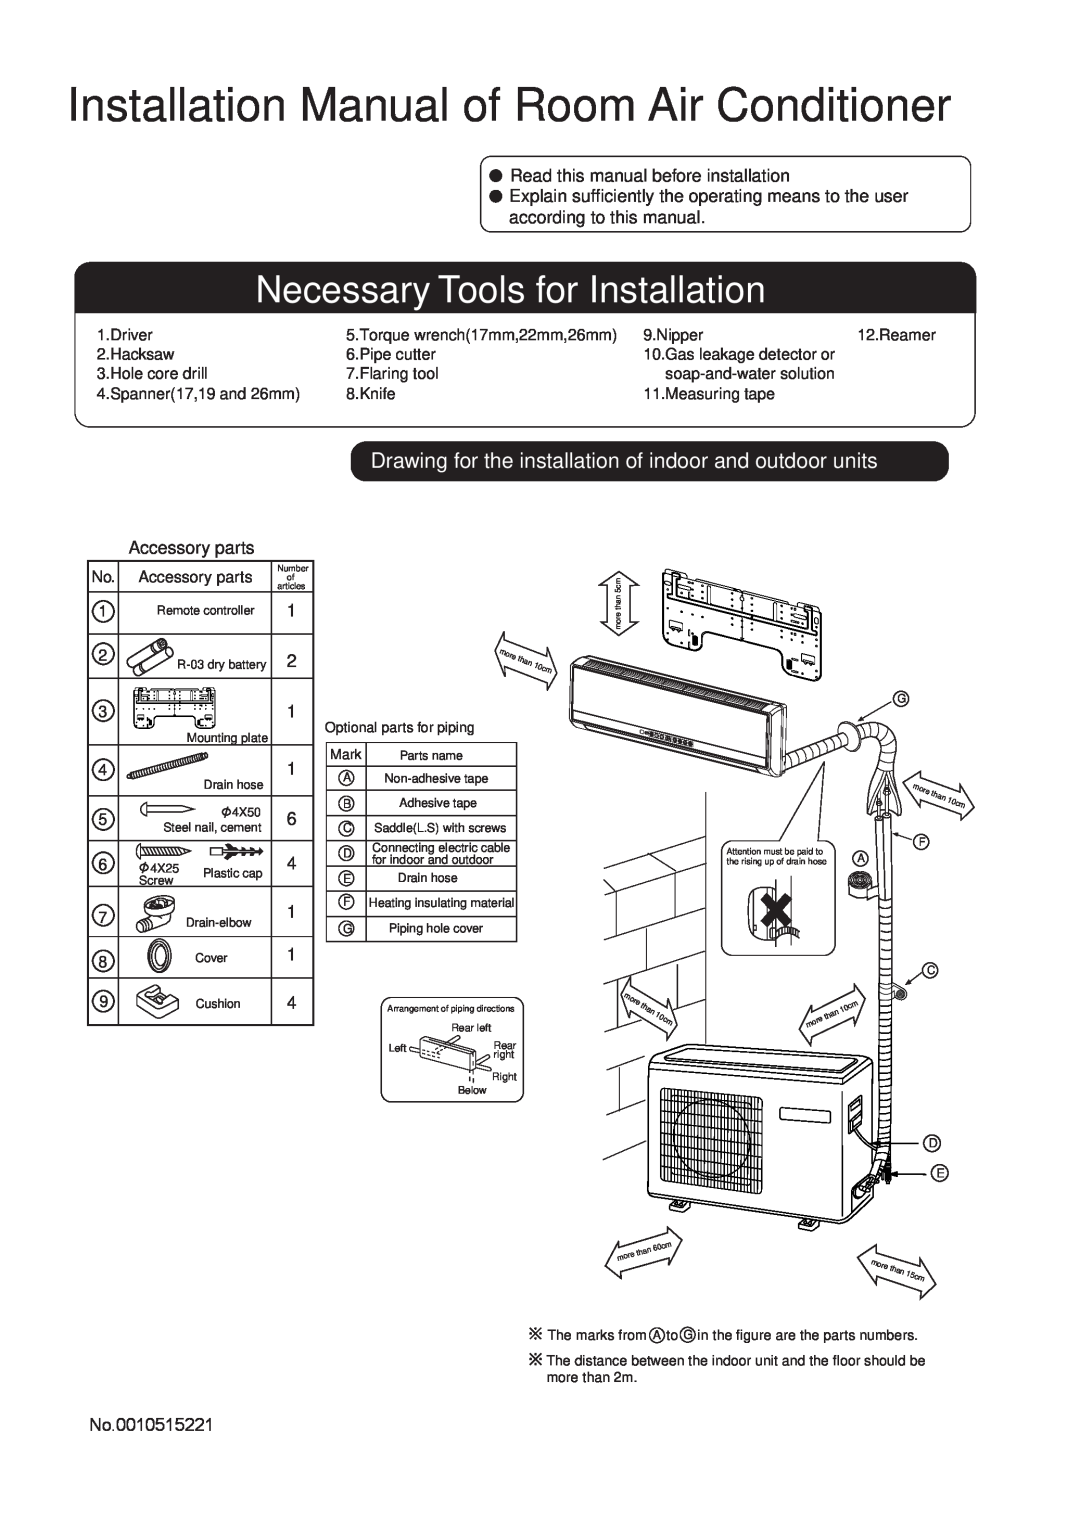 Haier HSU-1218CR03 installation manual Installation Manual of Room Air Conditioner, Necessary Tools for Installation 